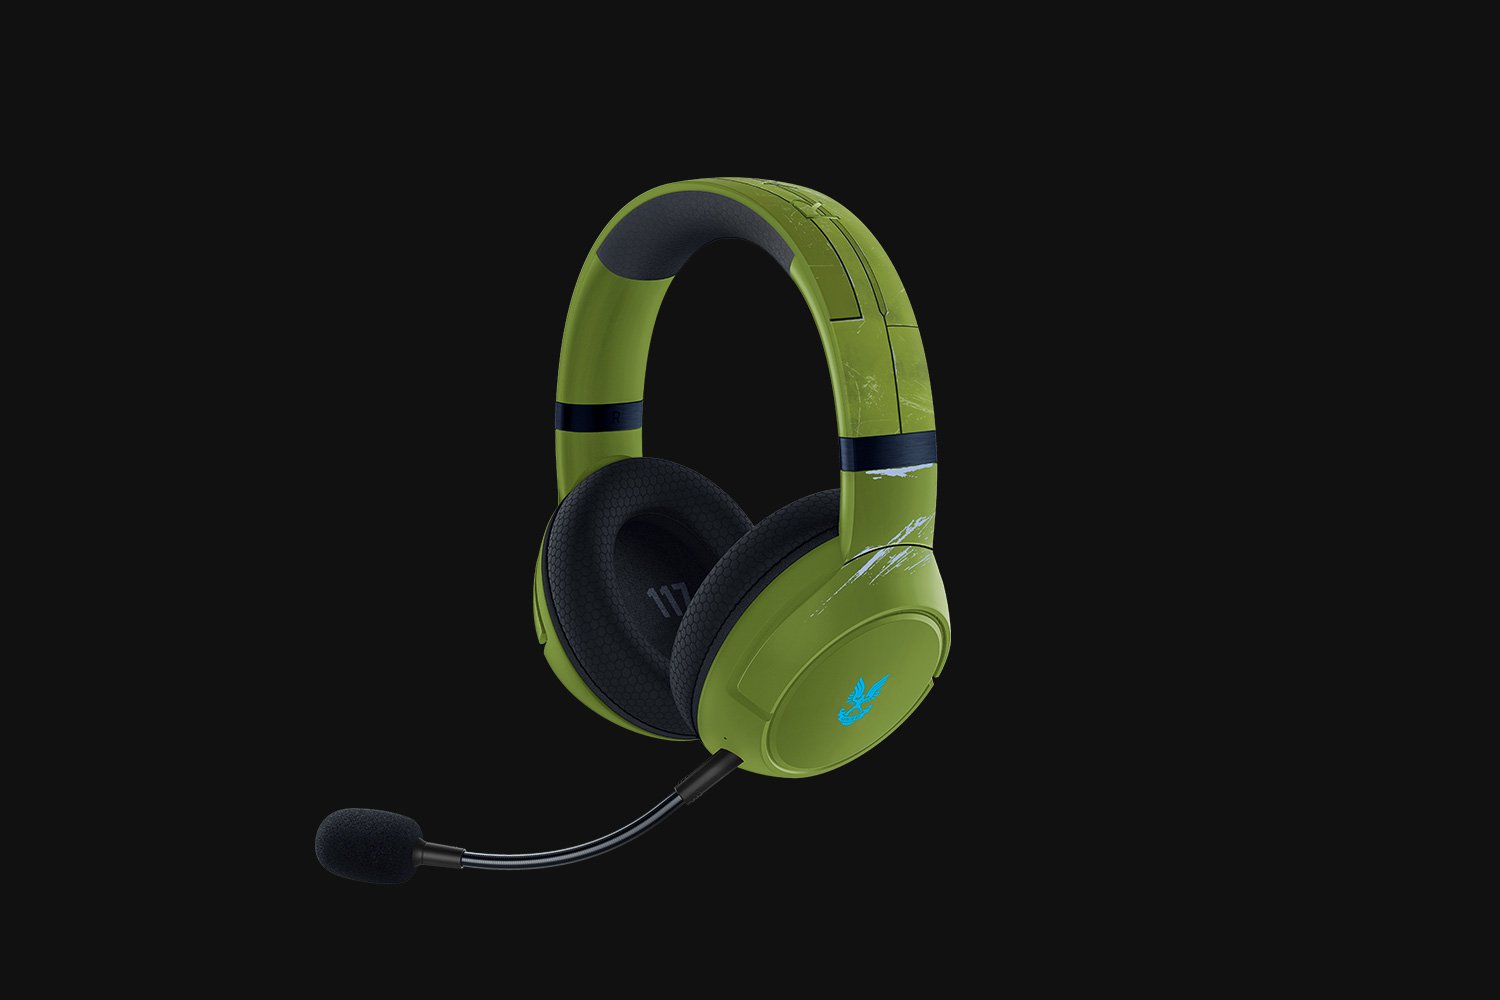 Razer Kaira Pro for Xbox Series X Halo Infinite Edition Wireless Gaming Headset